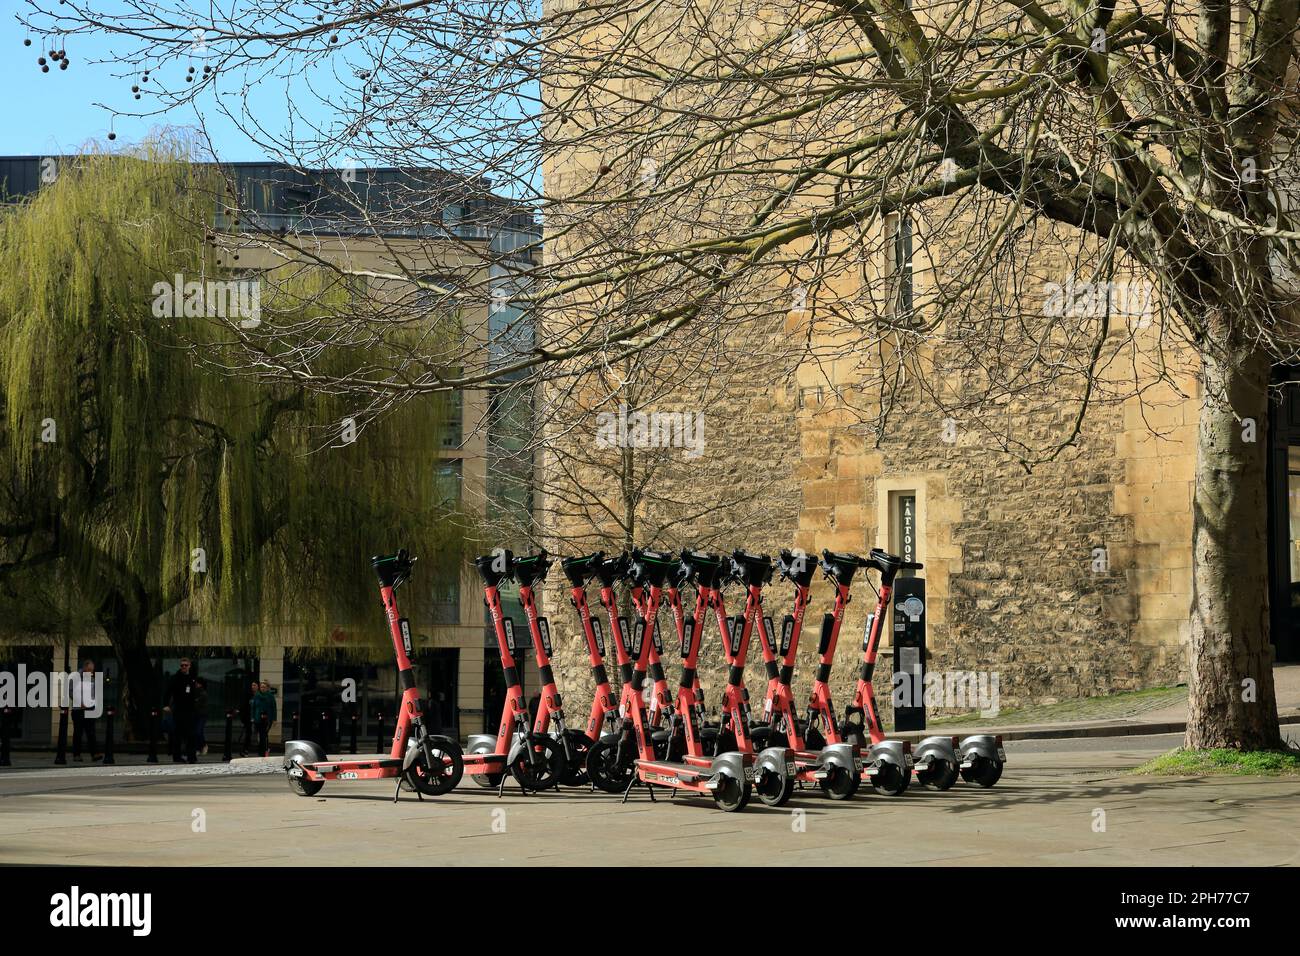 Motorrollerverleih. Viele elektrische Roller parken auf dem Bürgersteig, Bath. Aufgenommen Am 2023. März. Zyl Stockfoto